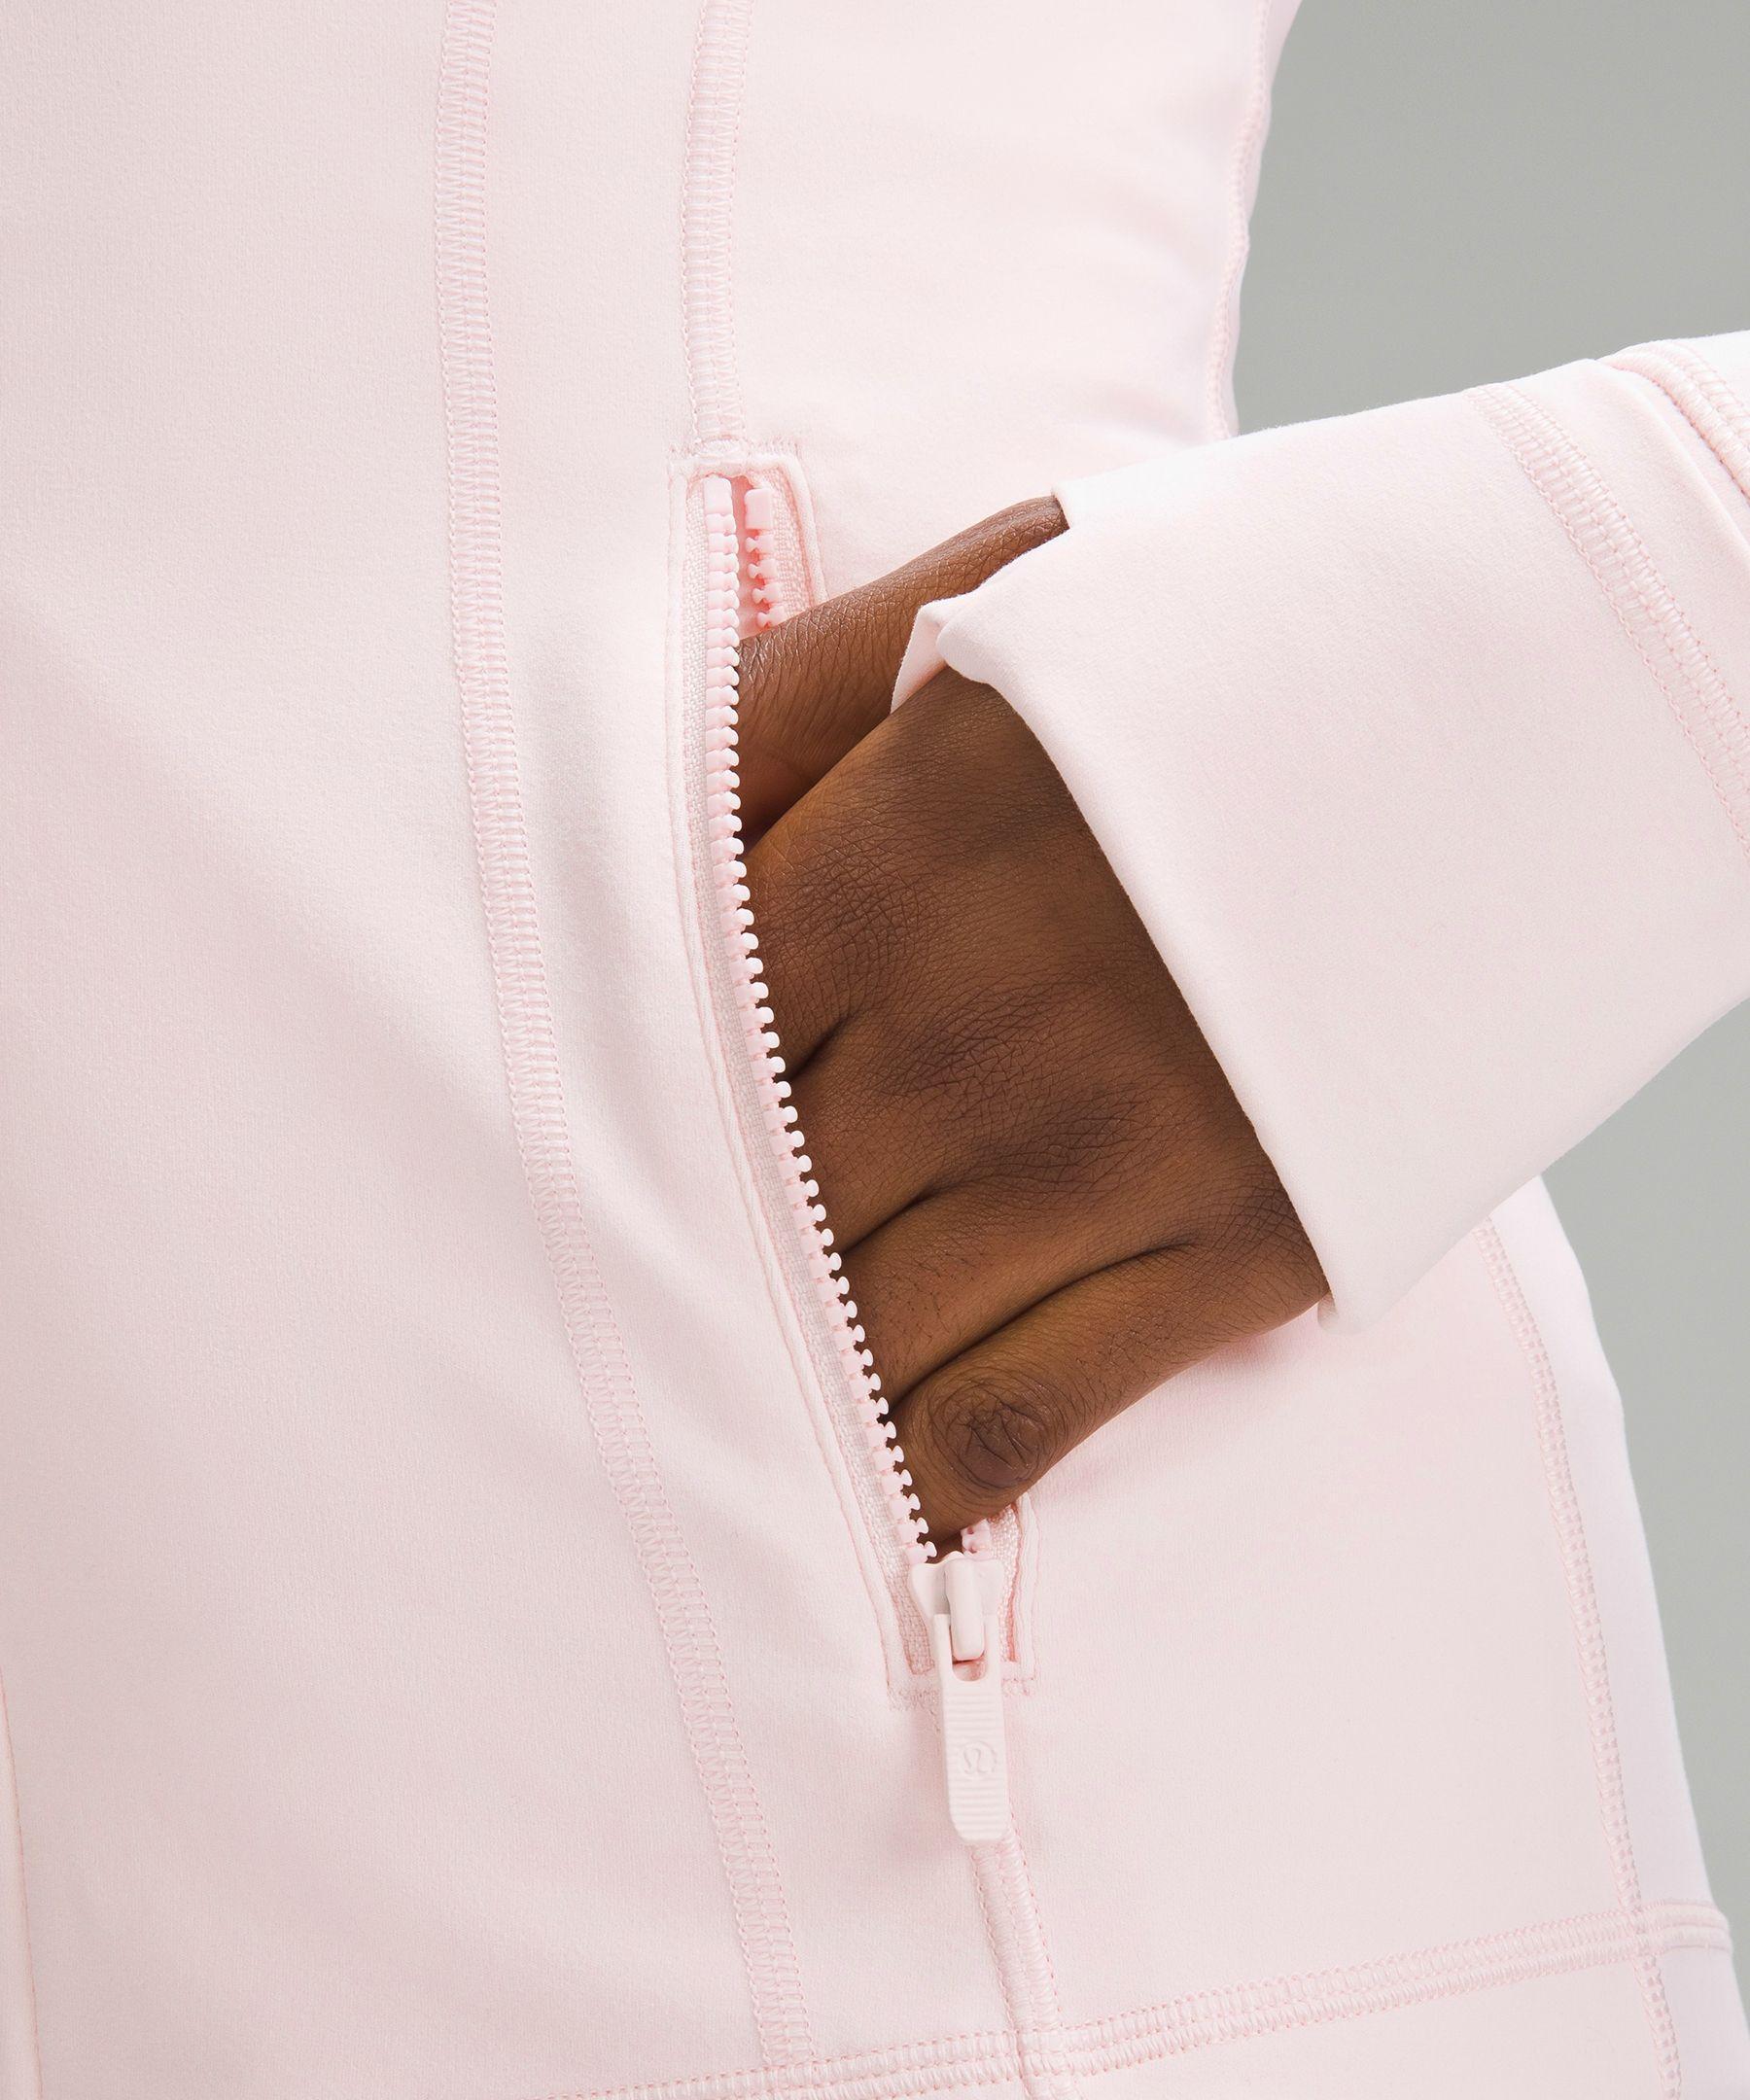 lululemon defined jacket nulu color: pink - Depop